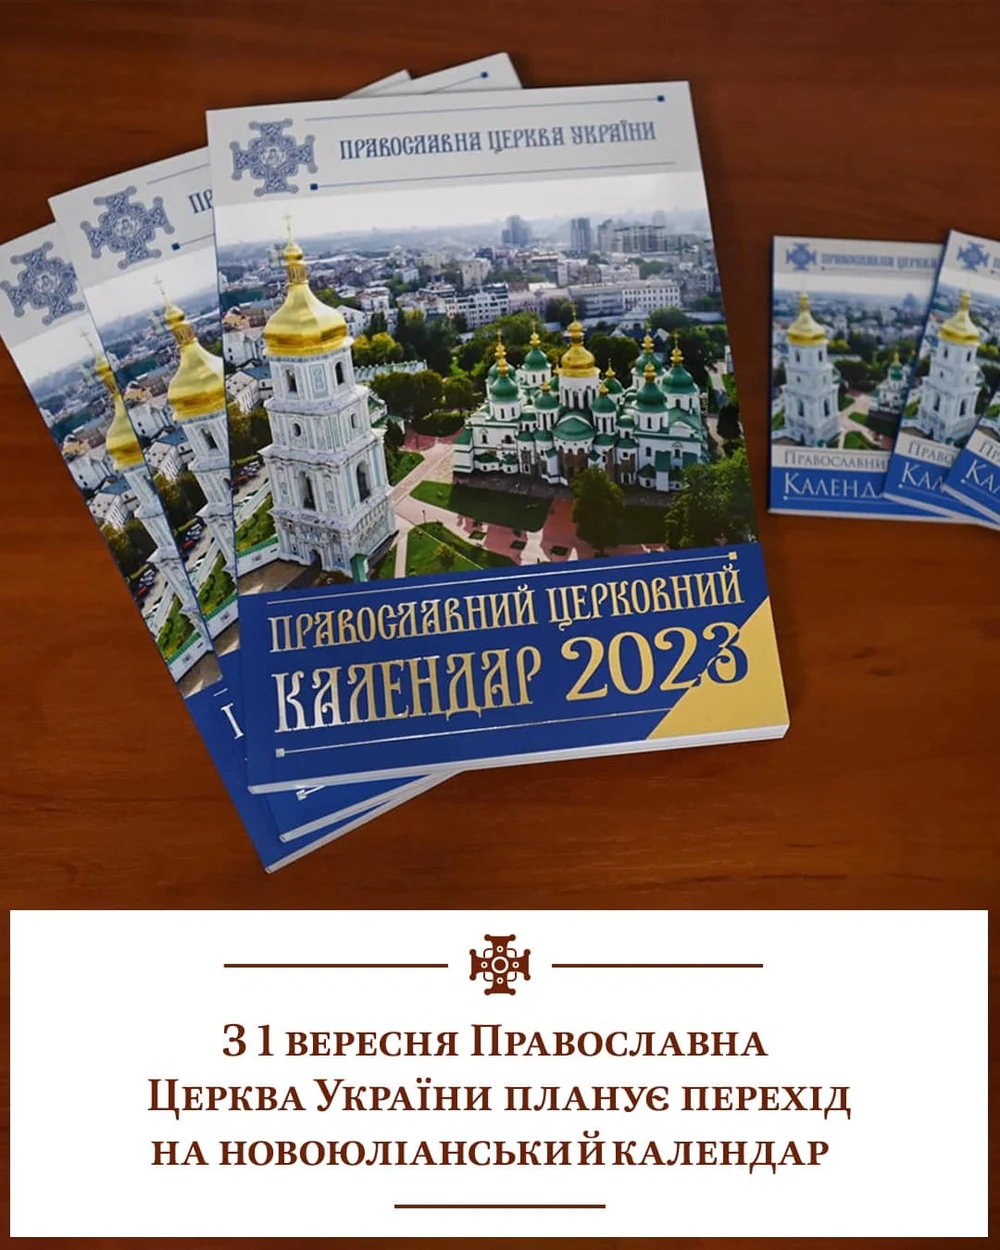 Biserica Ortodoxă a Ucrainei schimbă calendarul pentru a se distanța de Rusia. Va sărbători Crăciunul pe 25 decembrie